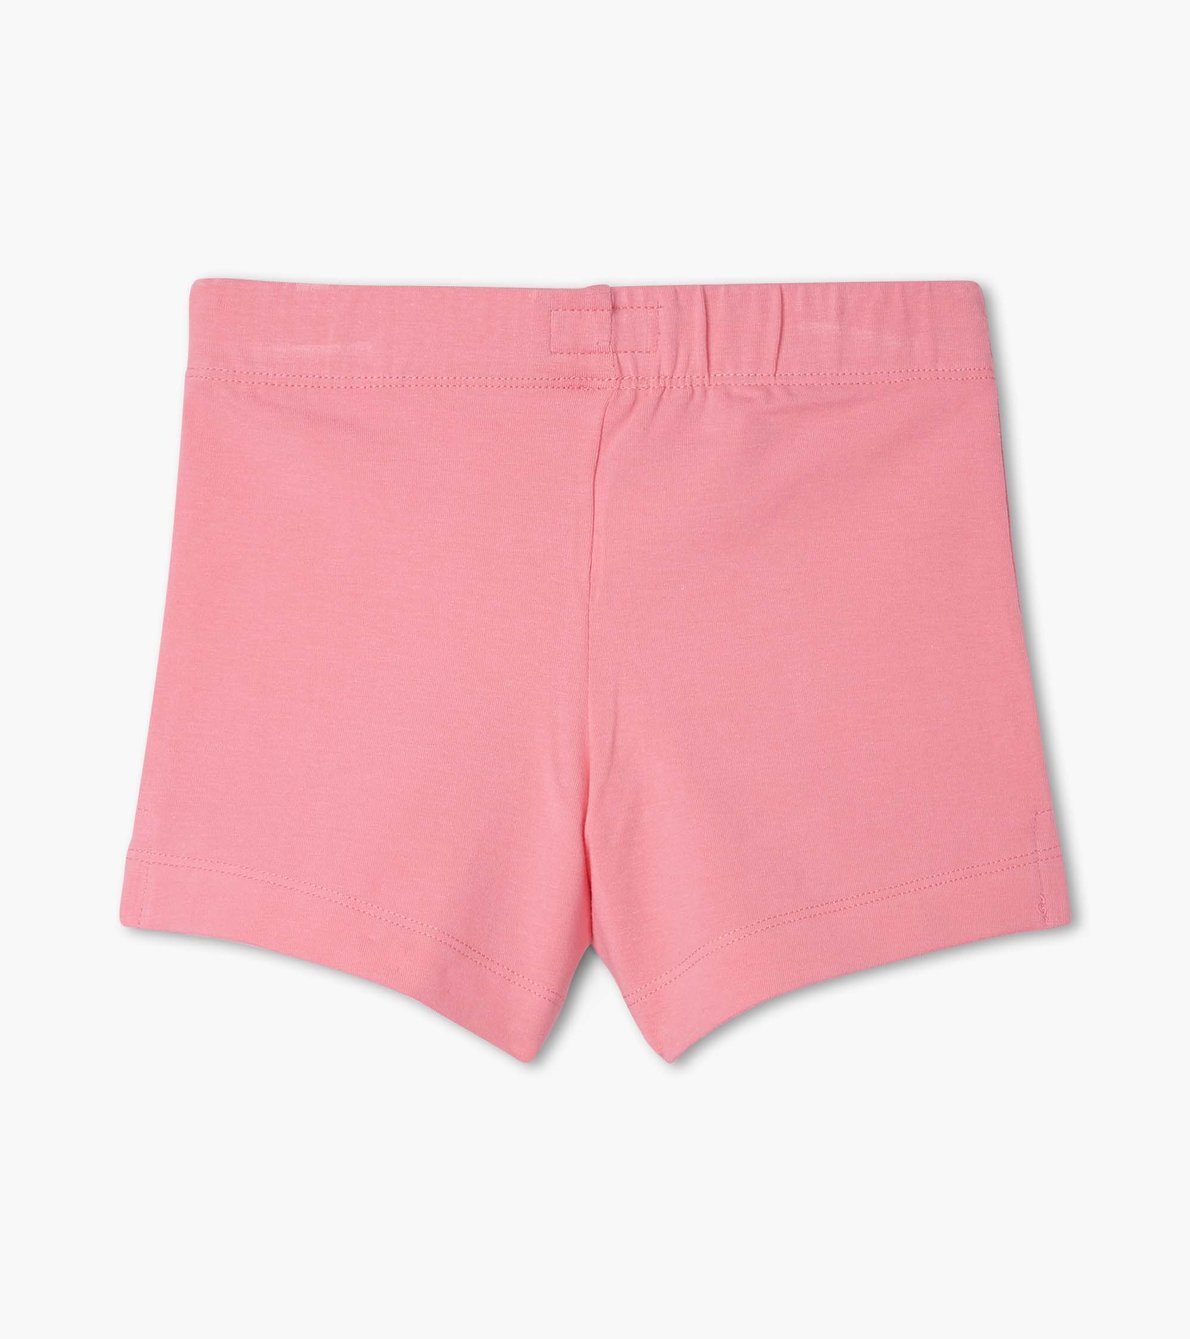 View larger image of Girls Light Pink Bicycle Shorts Bike Shorts